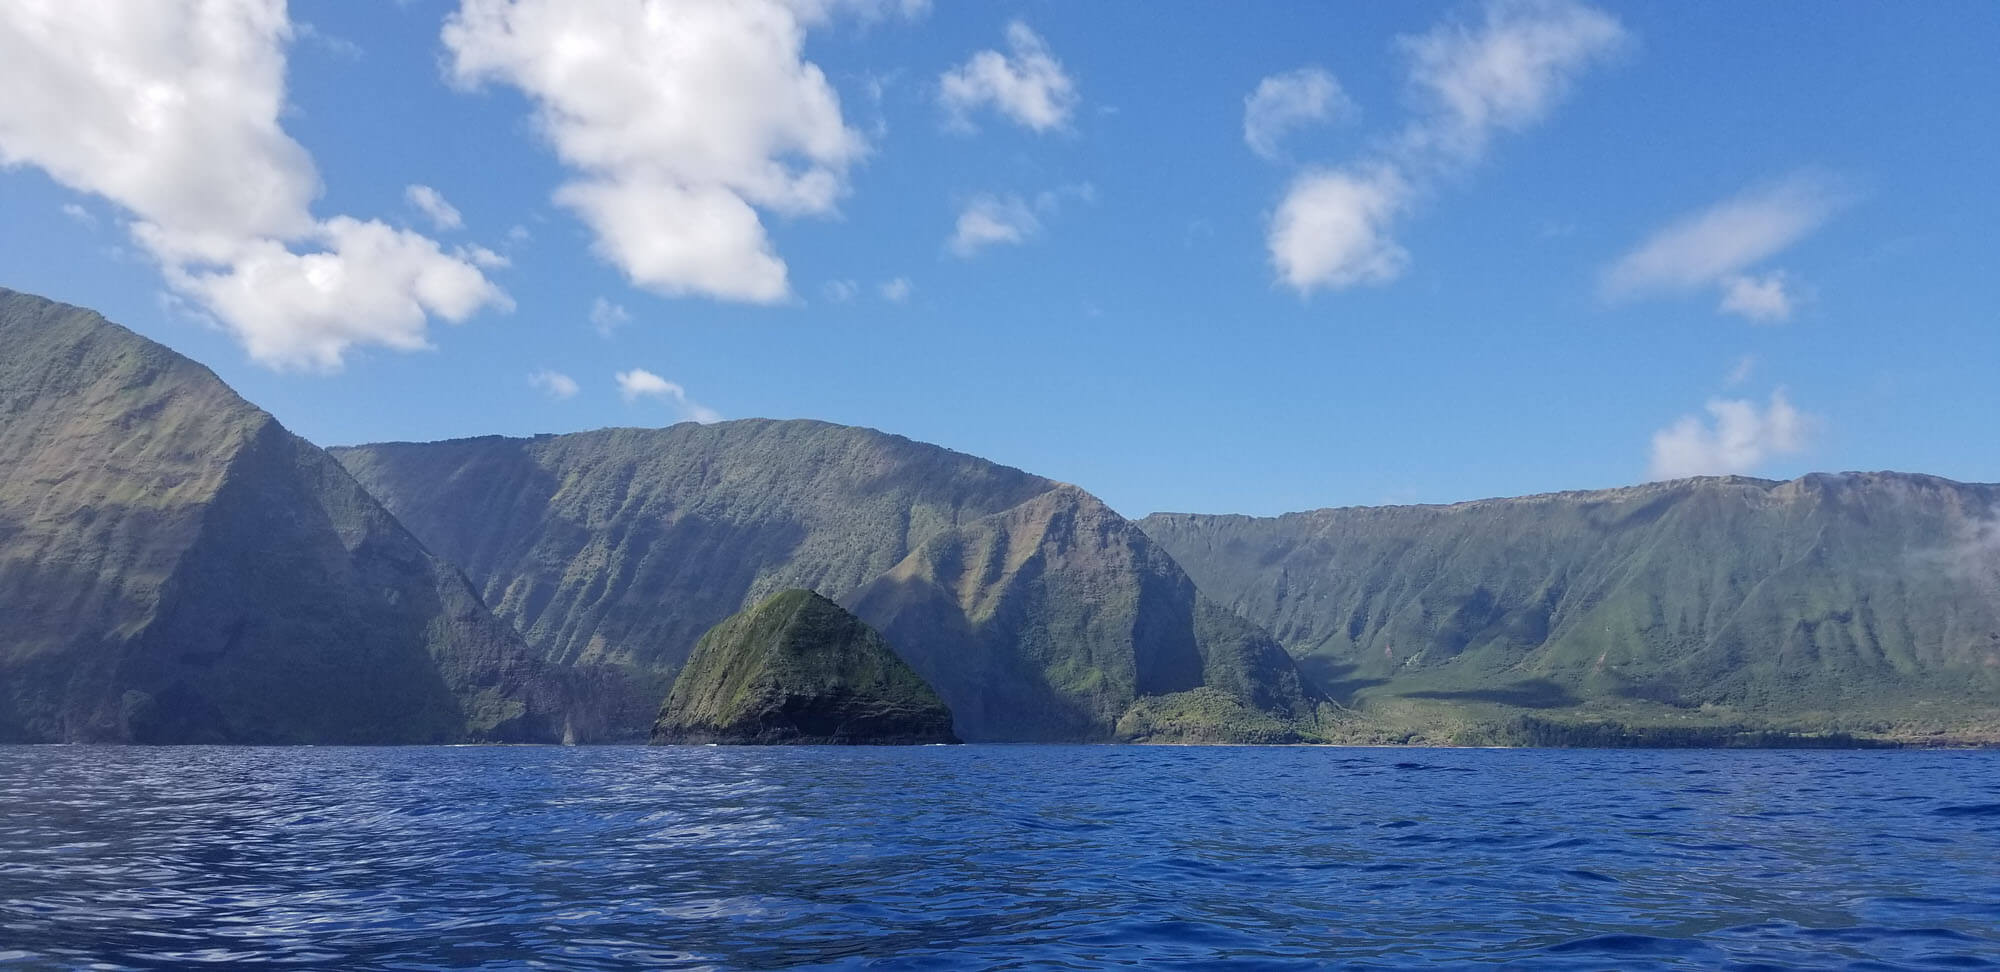 Beautiful Scenery in Maui